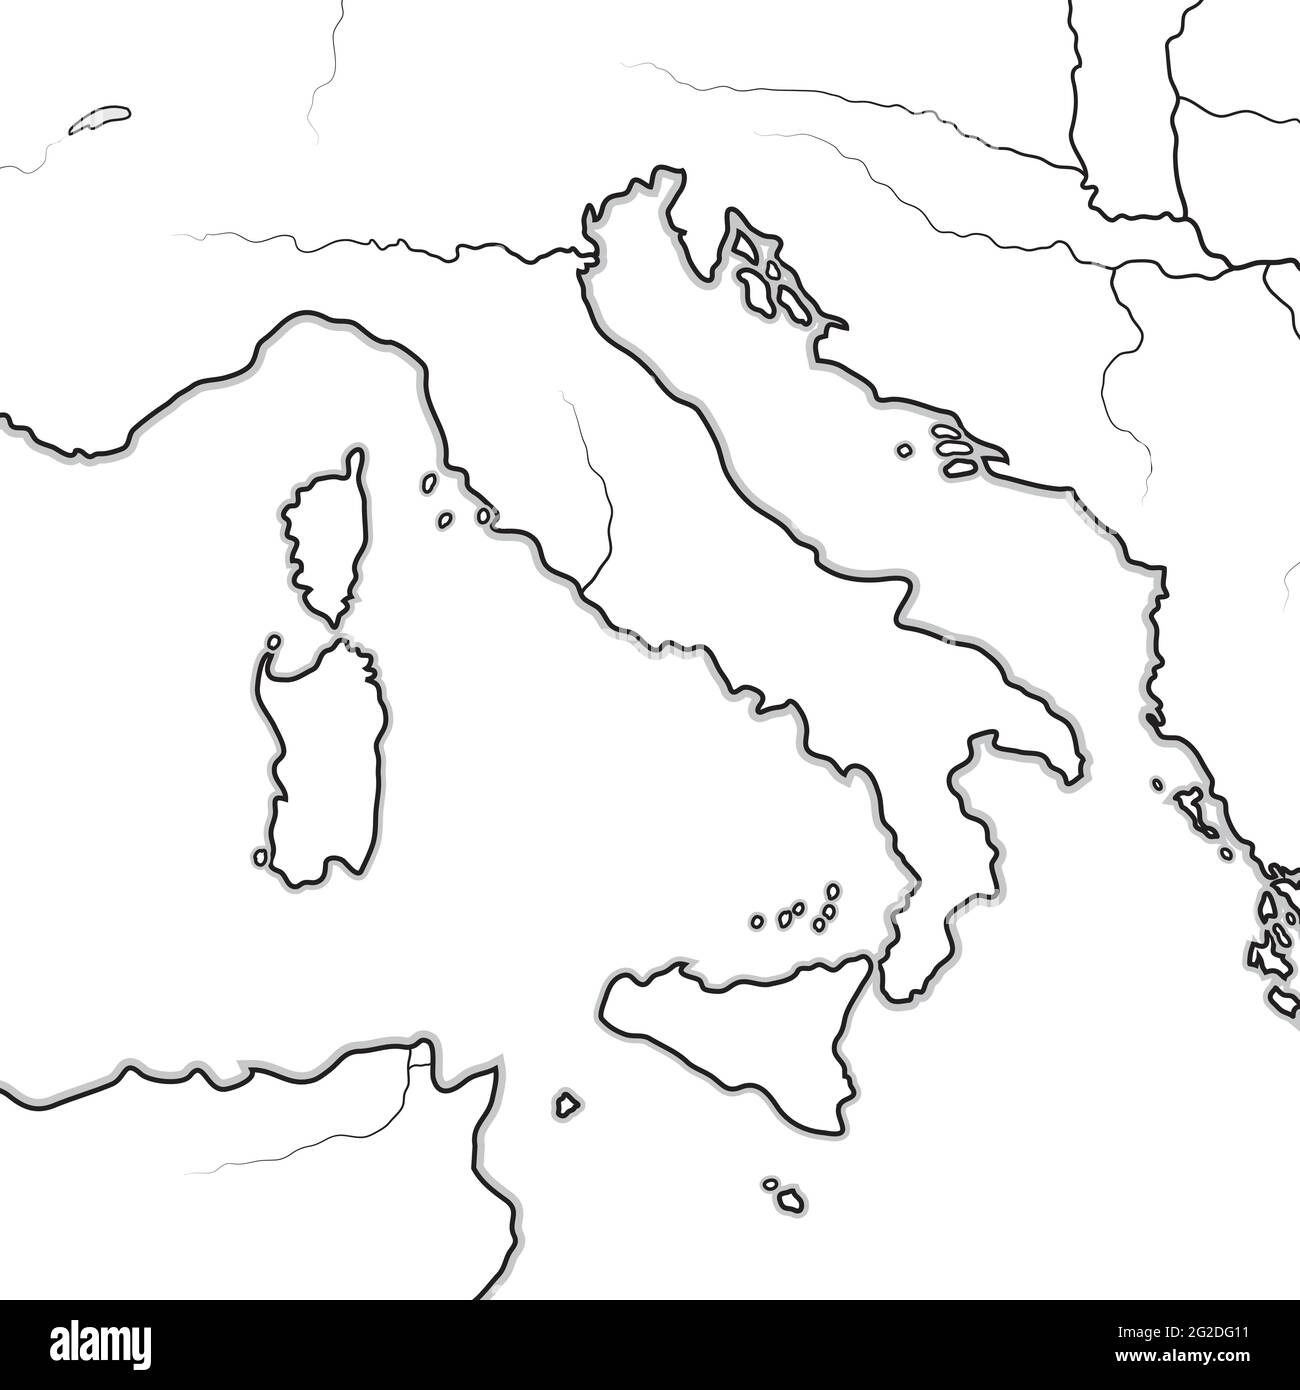 Carte des terres ITALIENNES: Italie, Toscane, Lombardie, Sicile, les Apennines, Péninsule italienne. Carte géographique. Illustration de Vecteur